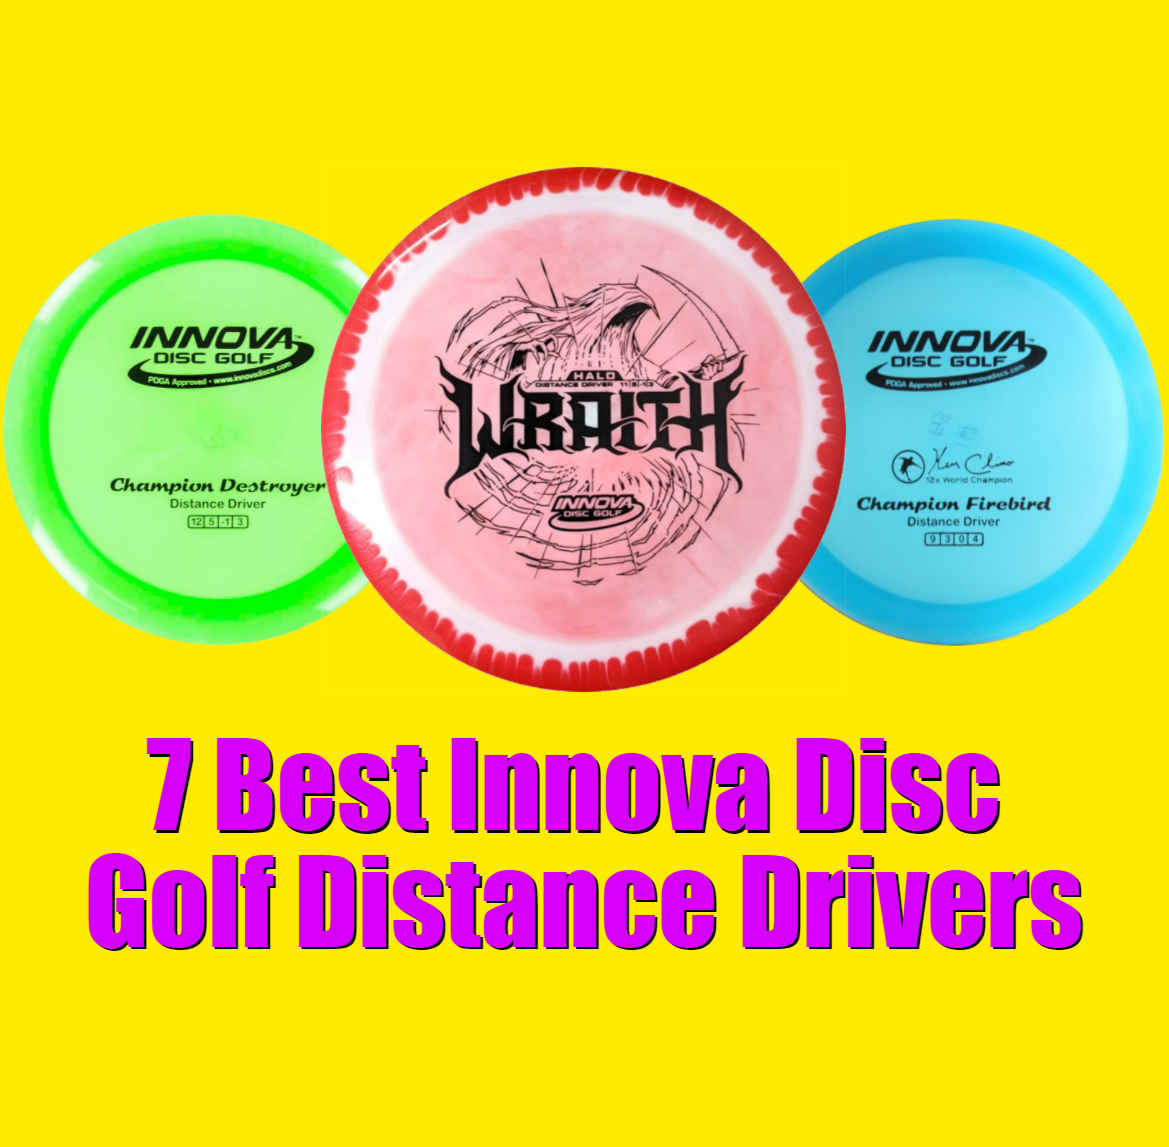 7 Best Innova Disc Golf Distance Drivers